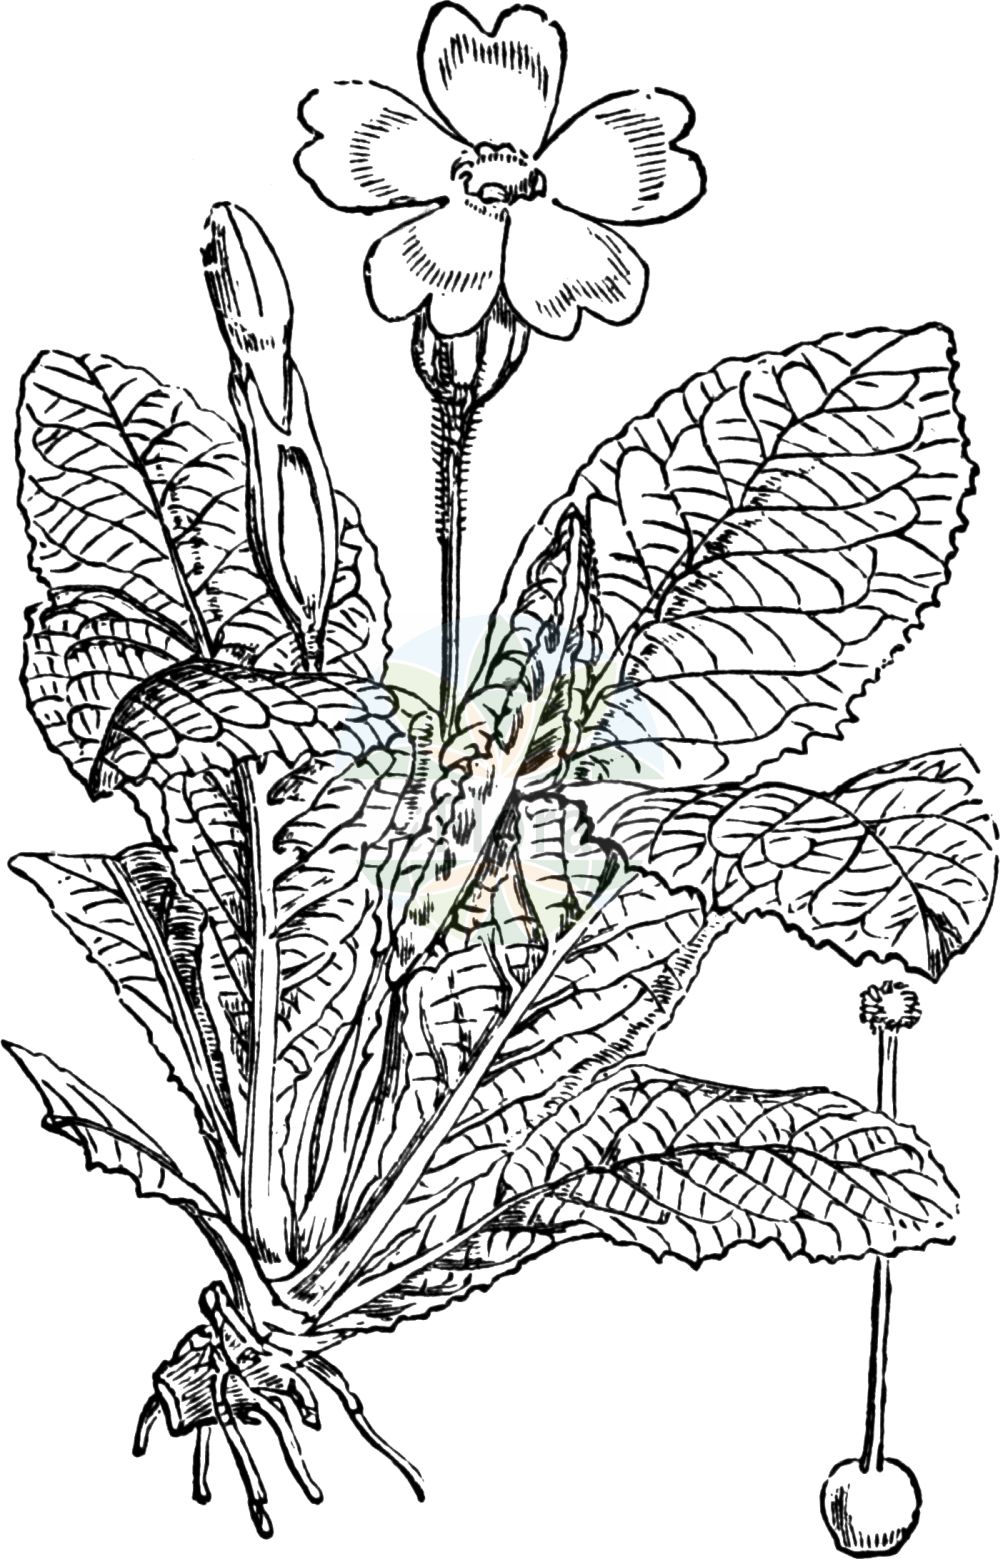 Historische Abbildung von Primula acaulis (Stängellose Schlüsselblume - Primrose). Das Bild zeigt Blatt, Bluete, Frucht und Same. ---- Historical Drawing of Primula acaulis (Stängellose Schlüsselblume - Primrose). The image is showing leaf, flower, fruit and seed.(Primula acaulis,Stängellose Schlüsselblume,Primrose,Primula acaulis,Primula vulgaris,Primula woronowii,Staengellose Schluesselblume,Stengellose Schluesselblume,Primrose,Common Primrose,English Primrose,Primula,Schlüsselblume,Primrose,Primulaceae,Schlüsselblumengewächse,Primrose family,Blatt,Bluete,Frucht,Same,leaf,flower,fruit,seed,Fitch et al. (1880))